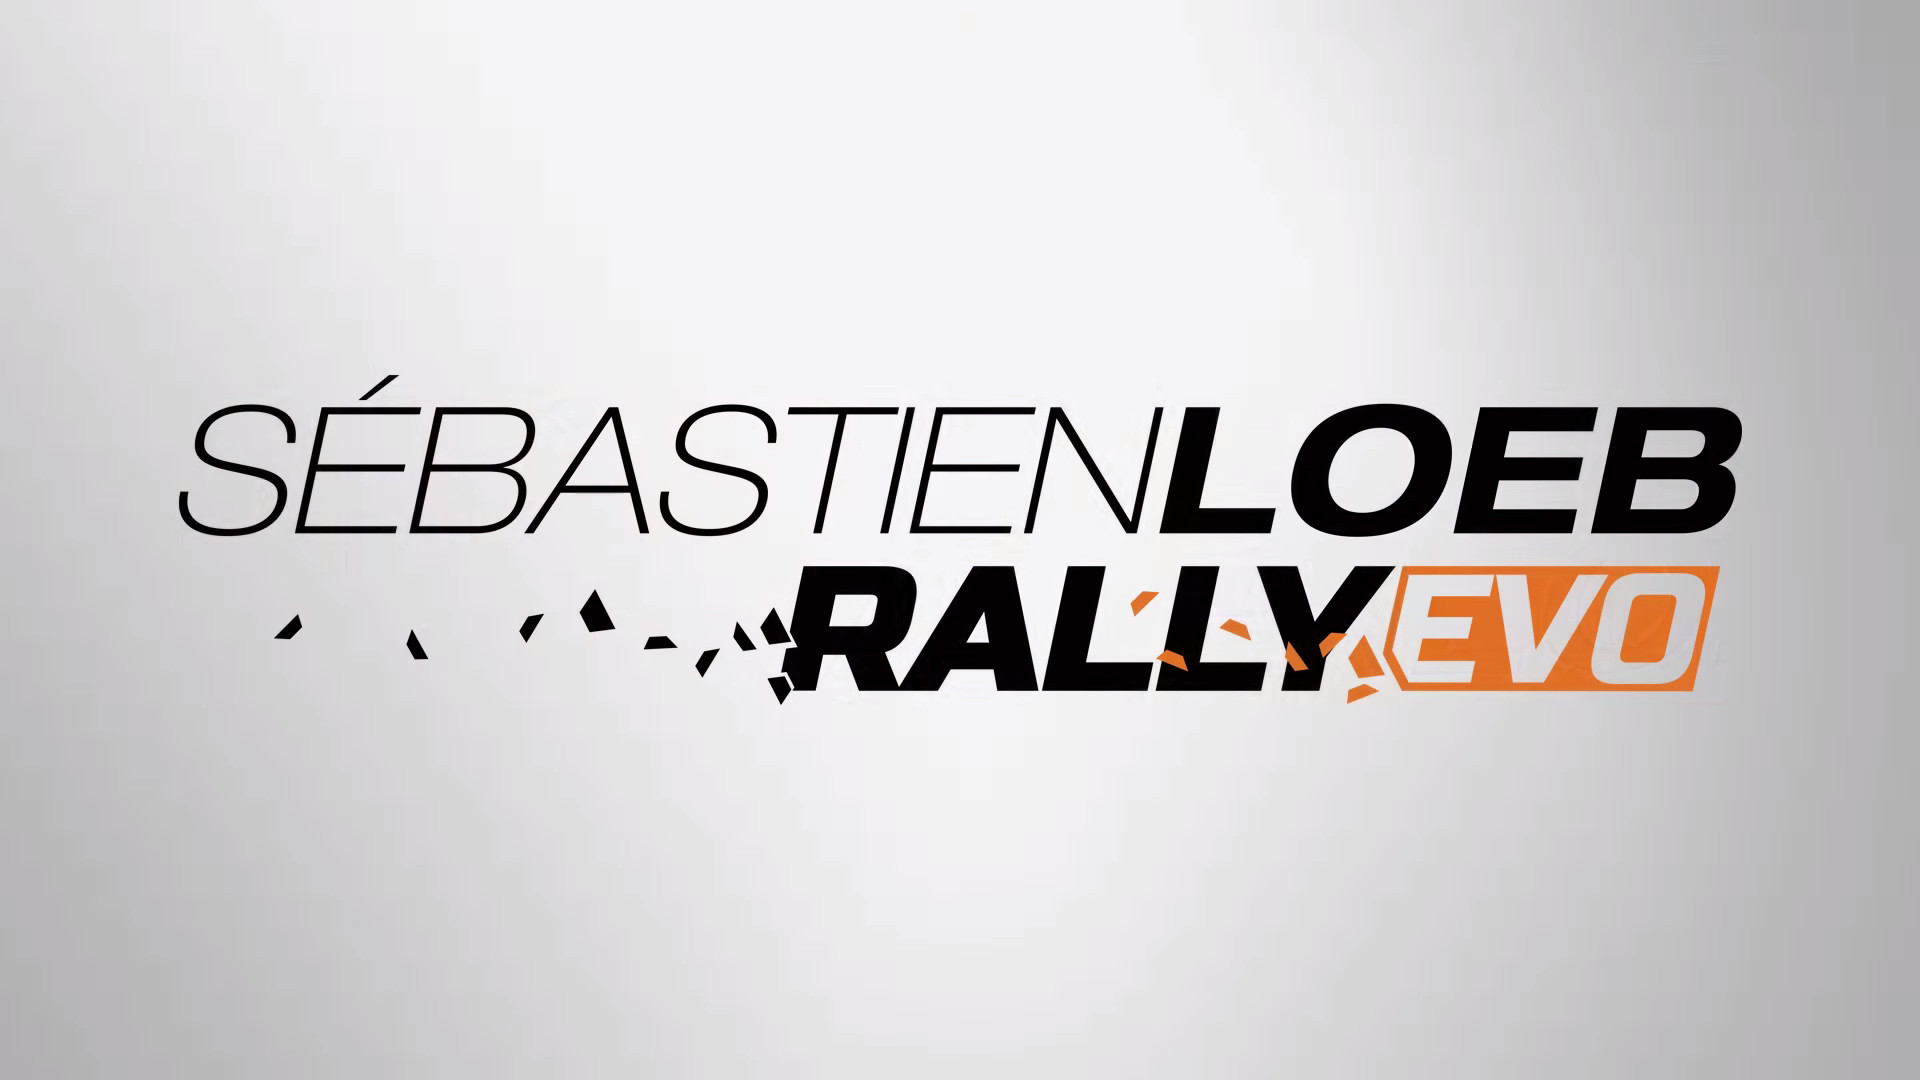 Sebastien-Loeb-Rally-Evo